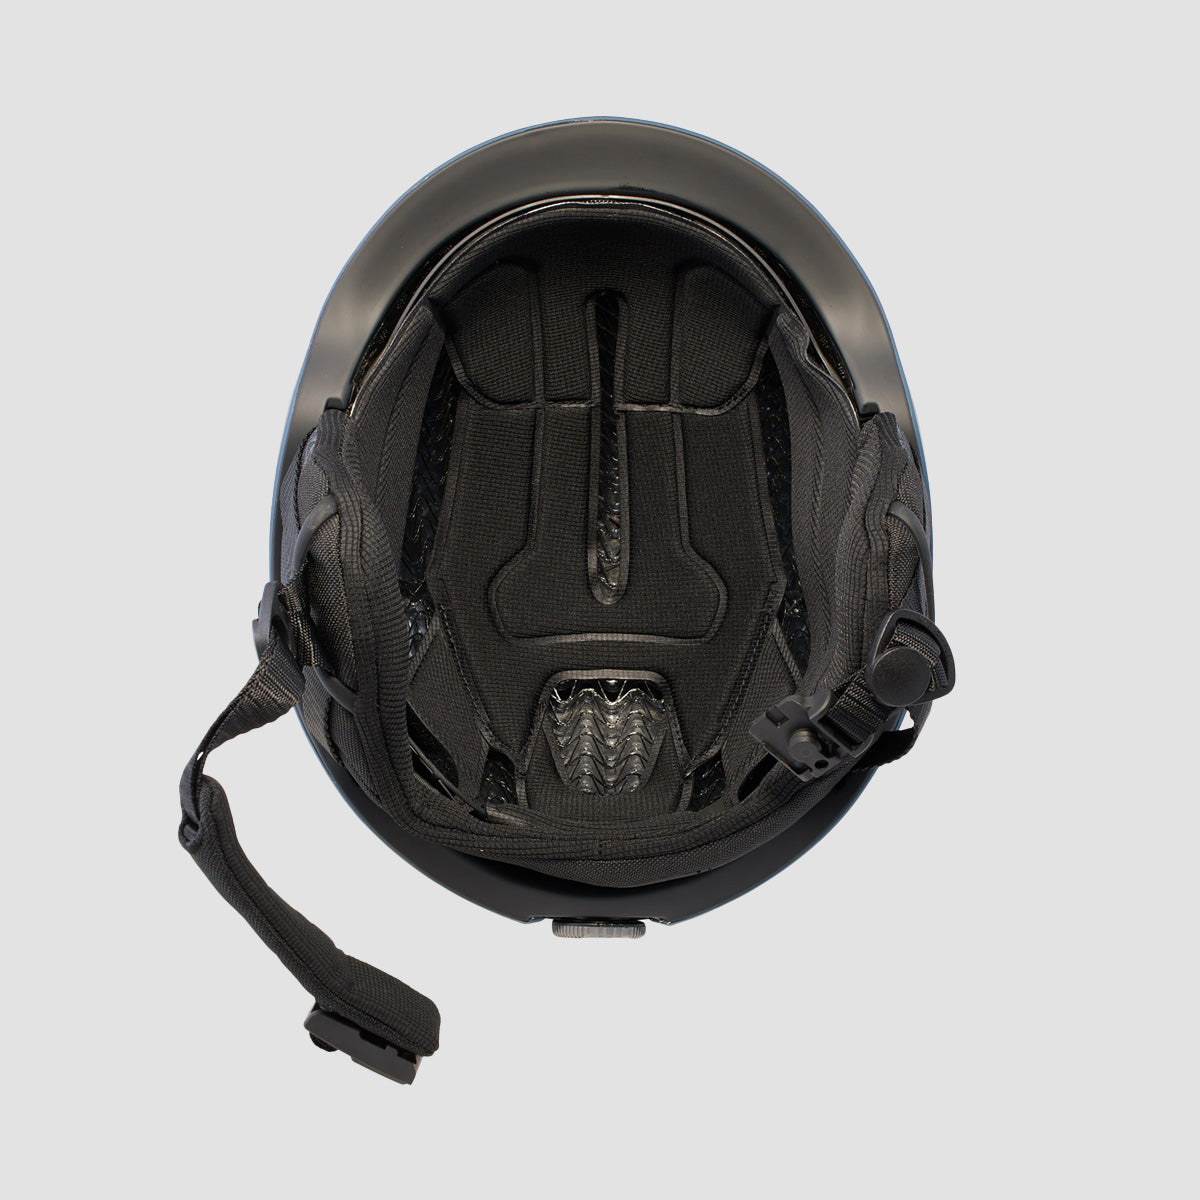 Anon Oslo WaveCel Snow Helmet Nightfall